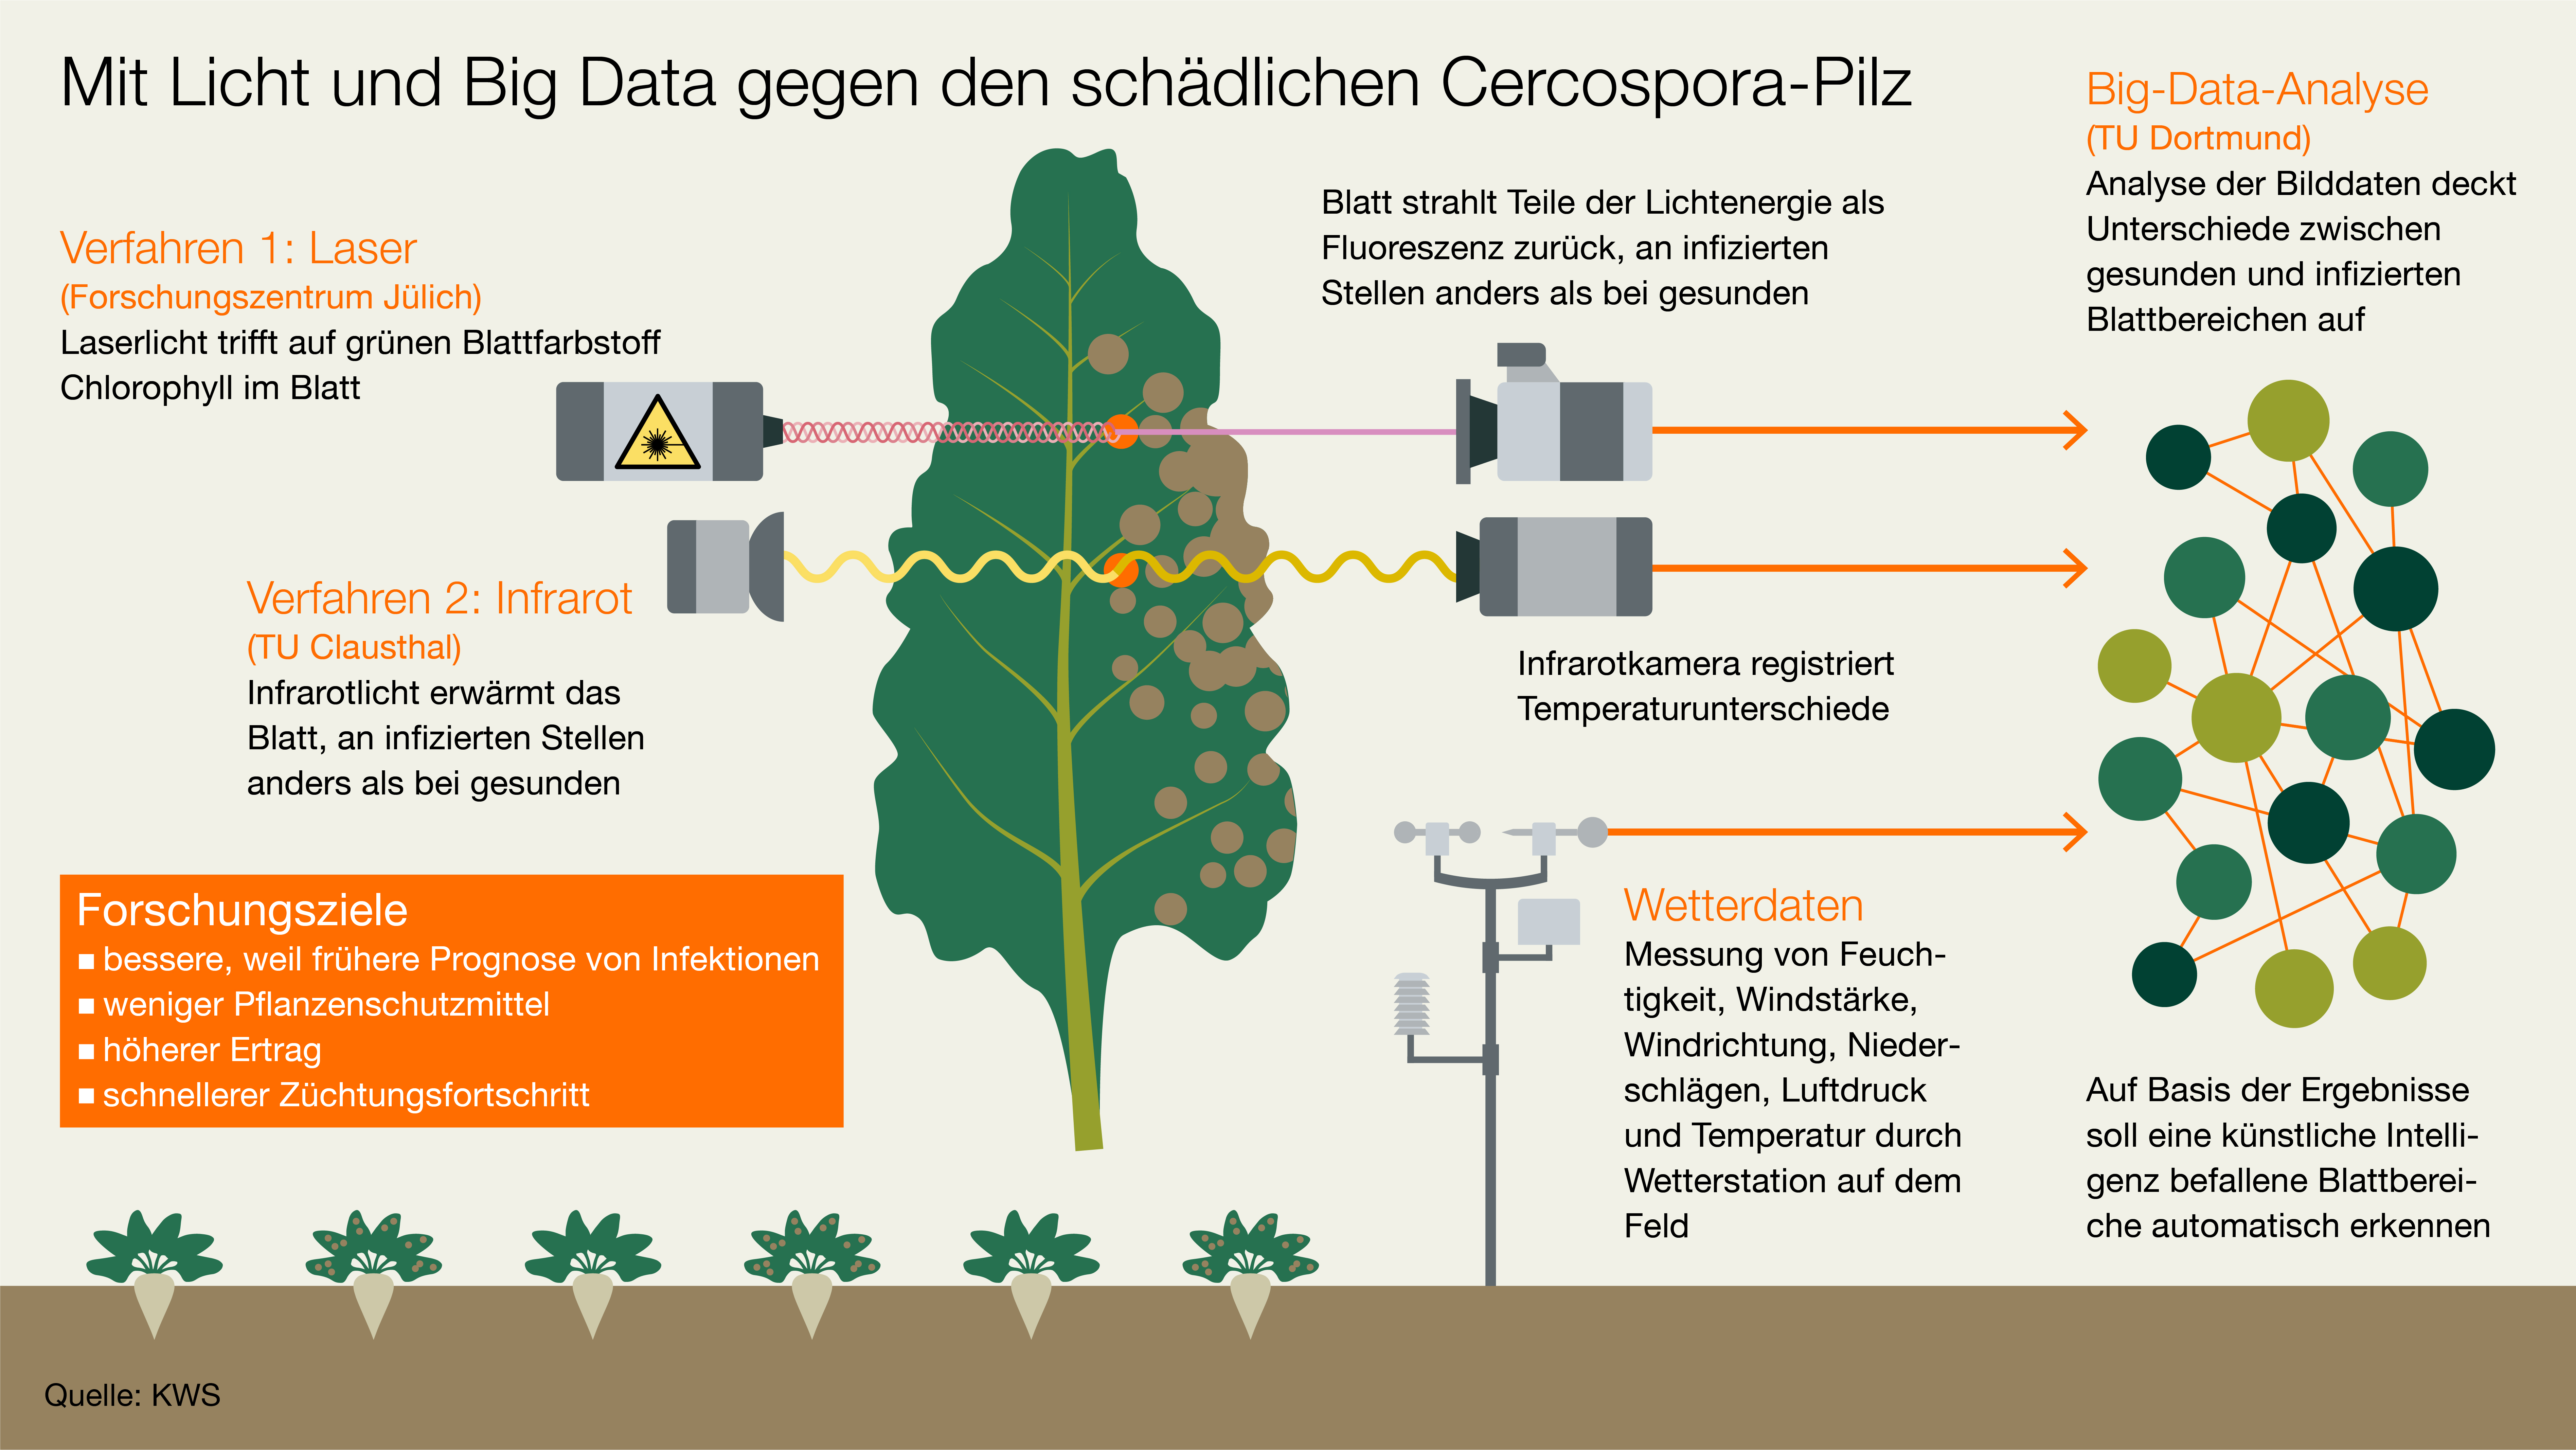 KWS Infografik: Mit Licht und Big Data gegen den schädlichen Cercospora-Pilz